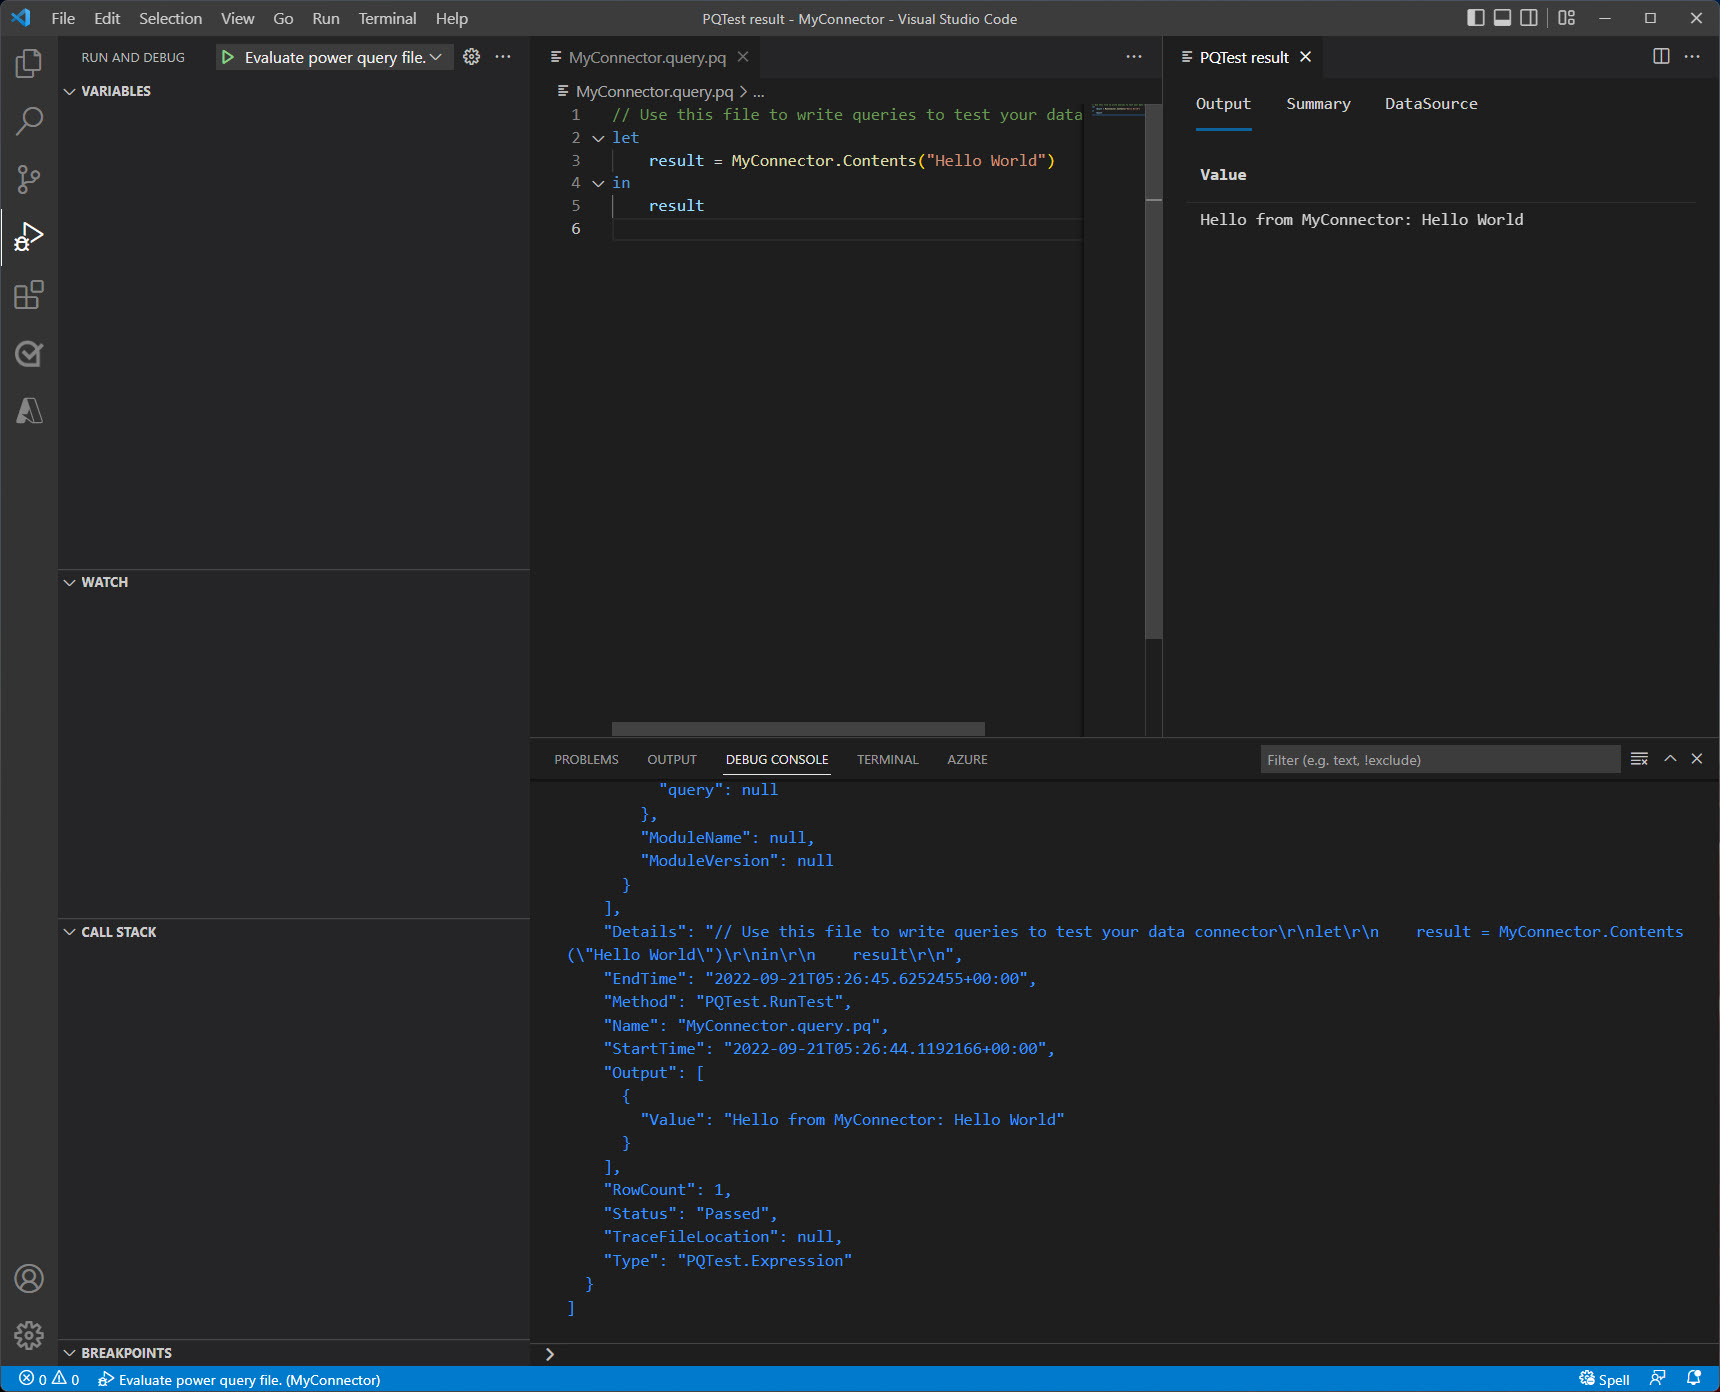 Ventana de Visual Studio Code después de finalizar la evaluación que muestra la salida en la consola y el panel de resultados.